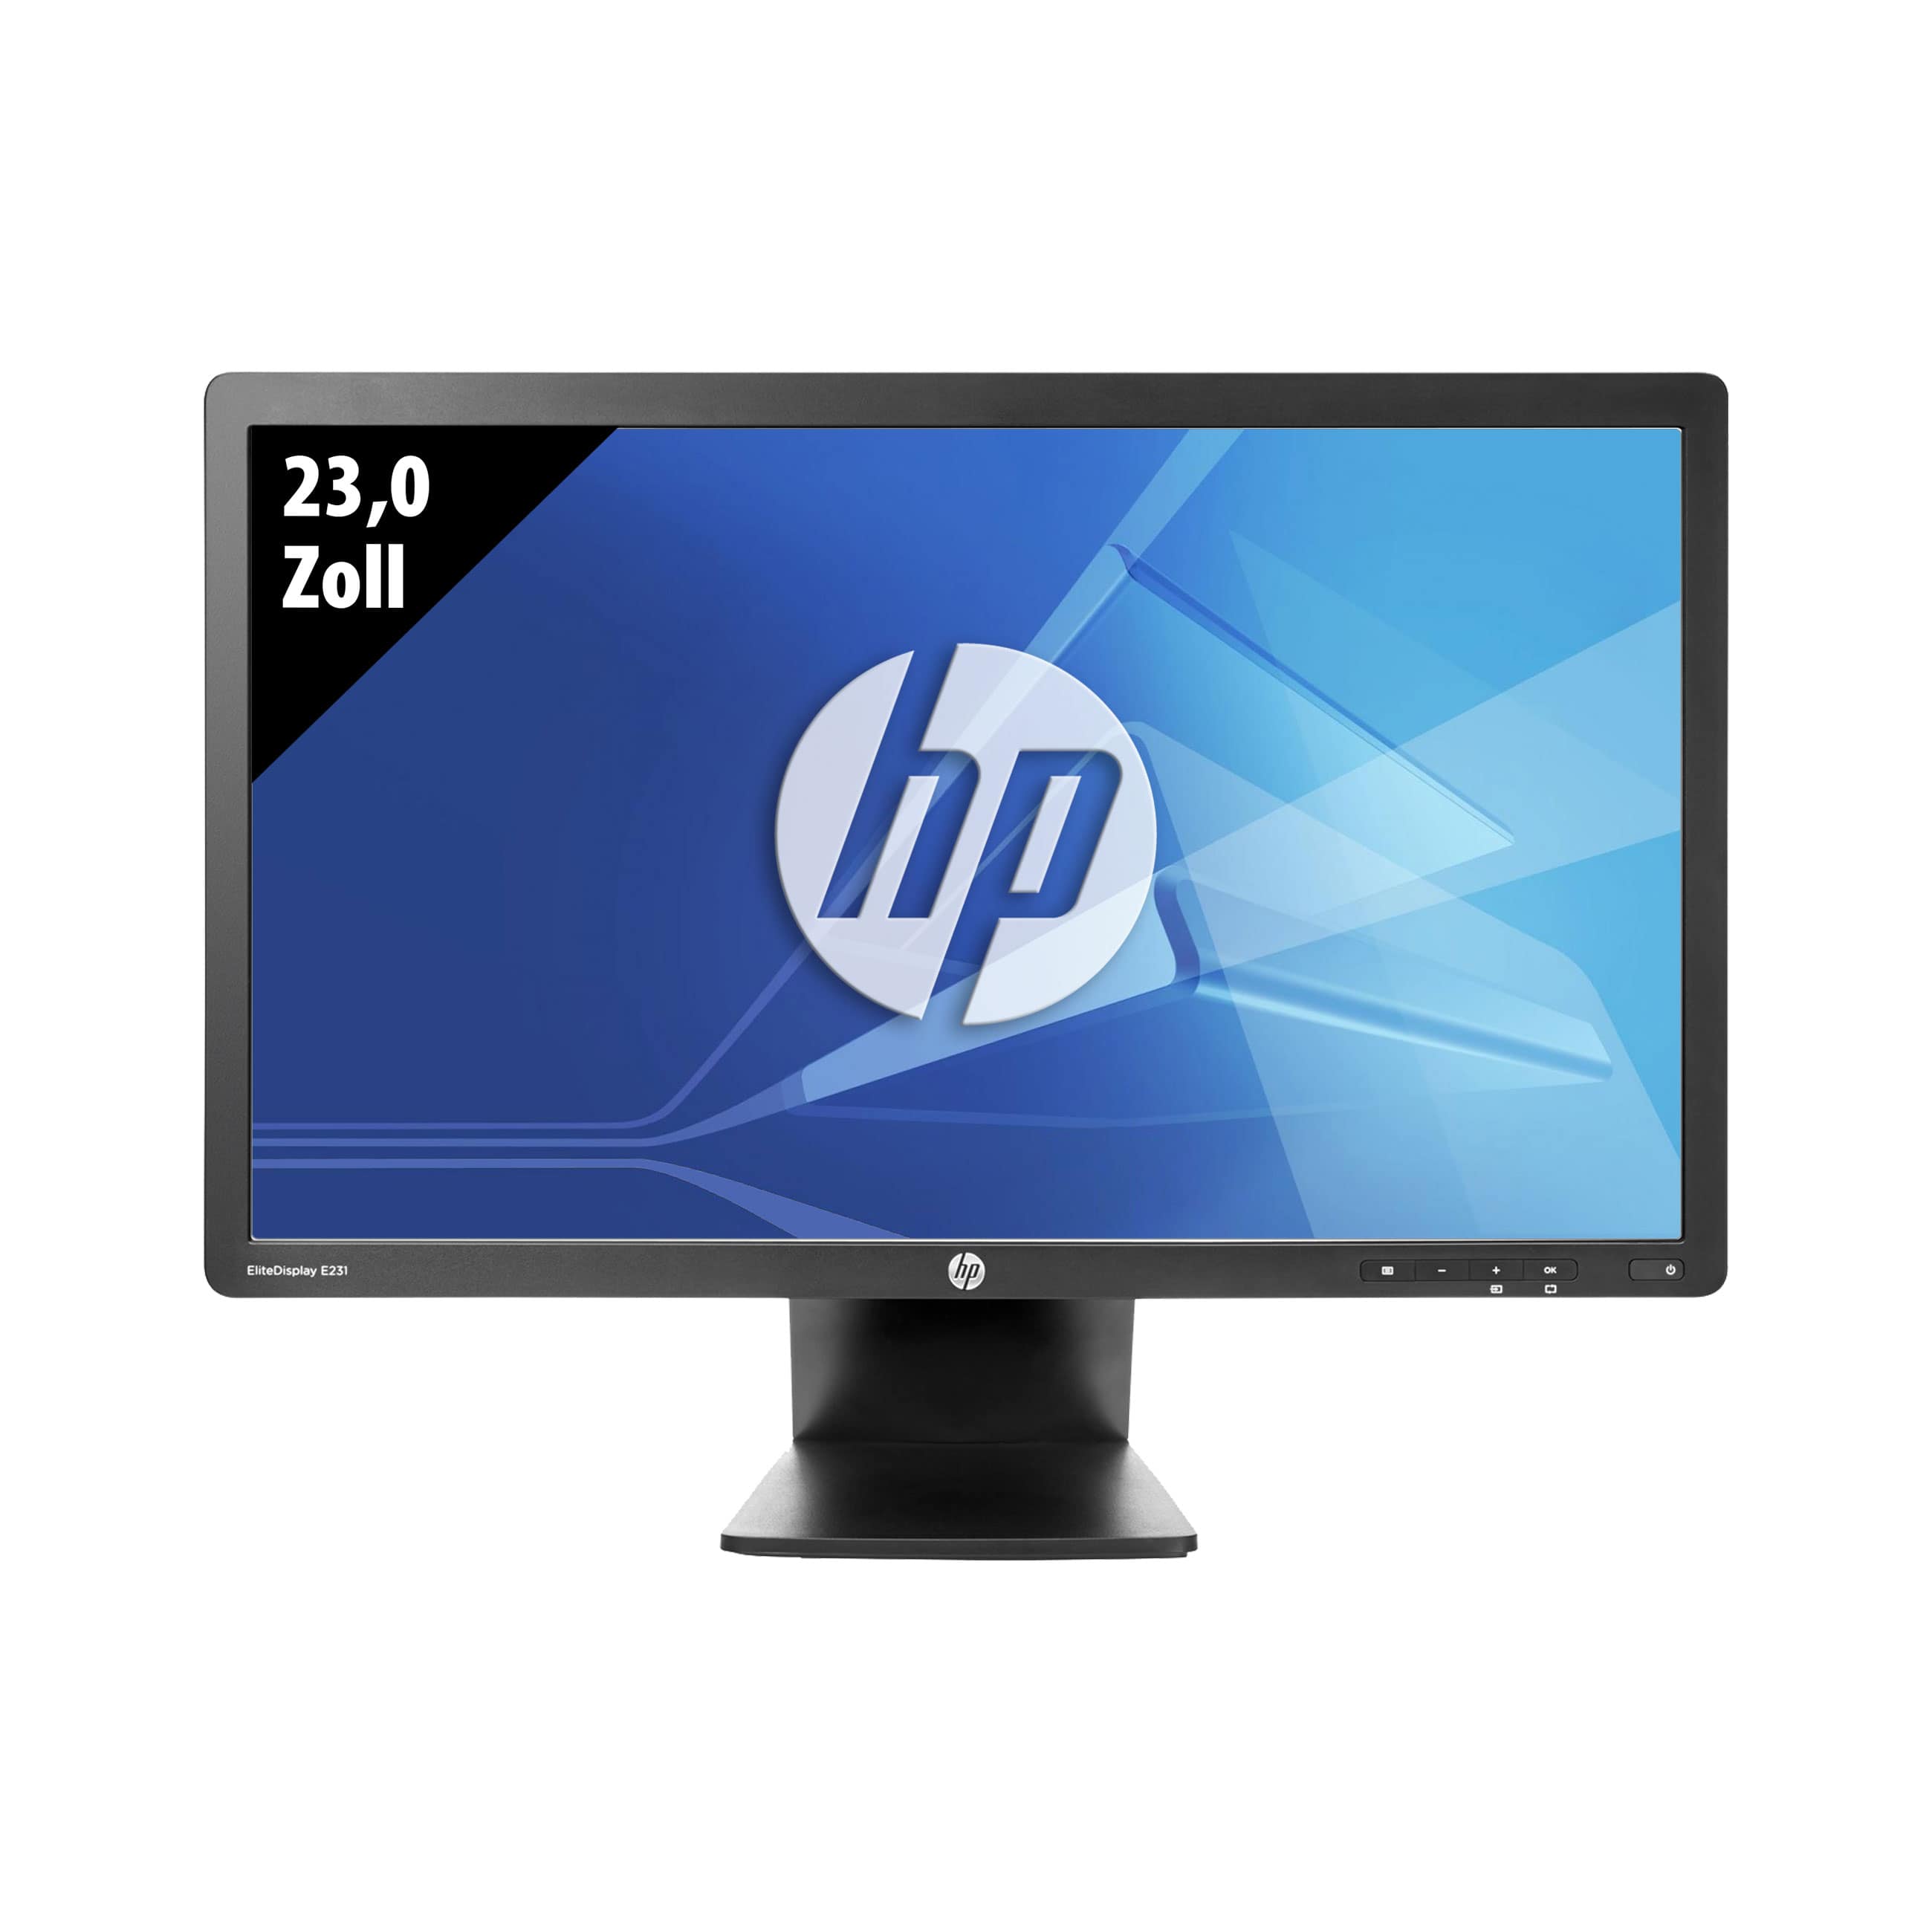 Obrázok monitoru HP EliteDesk E231 - 23,0 Palcov - Čierny